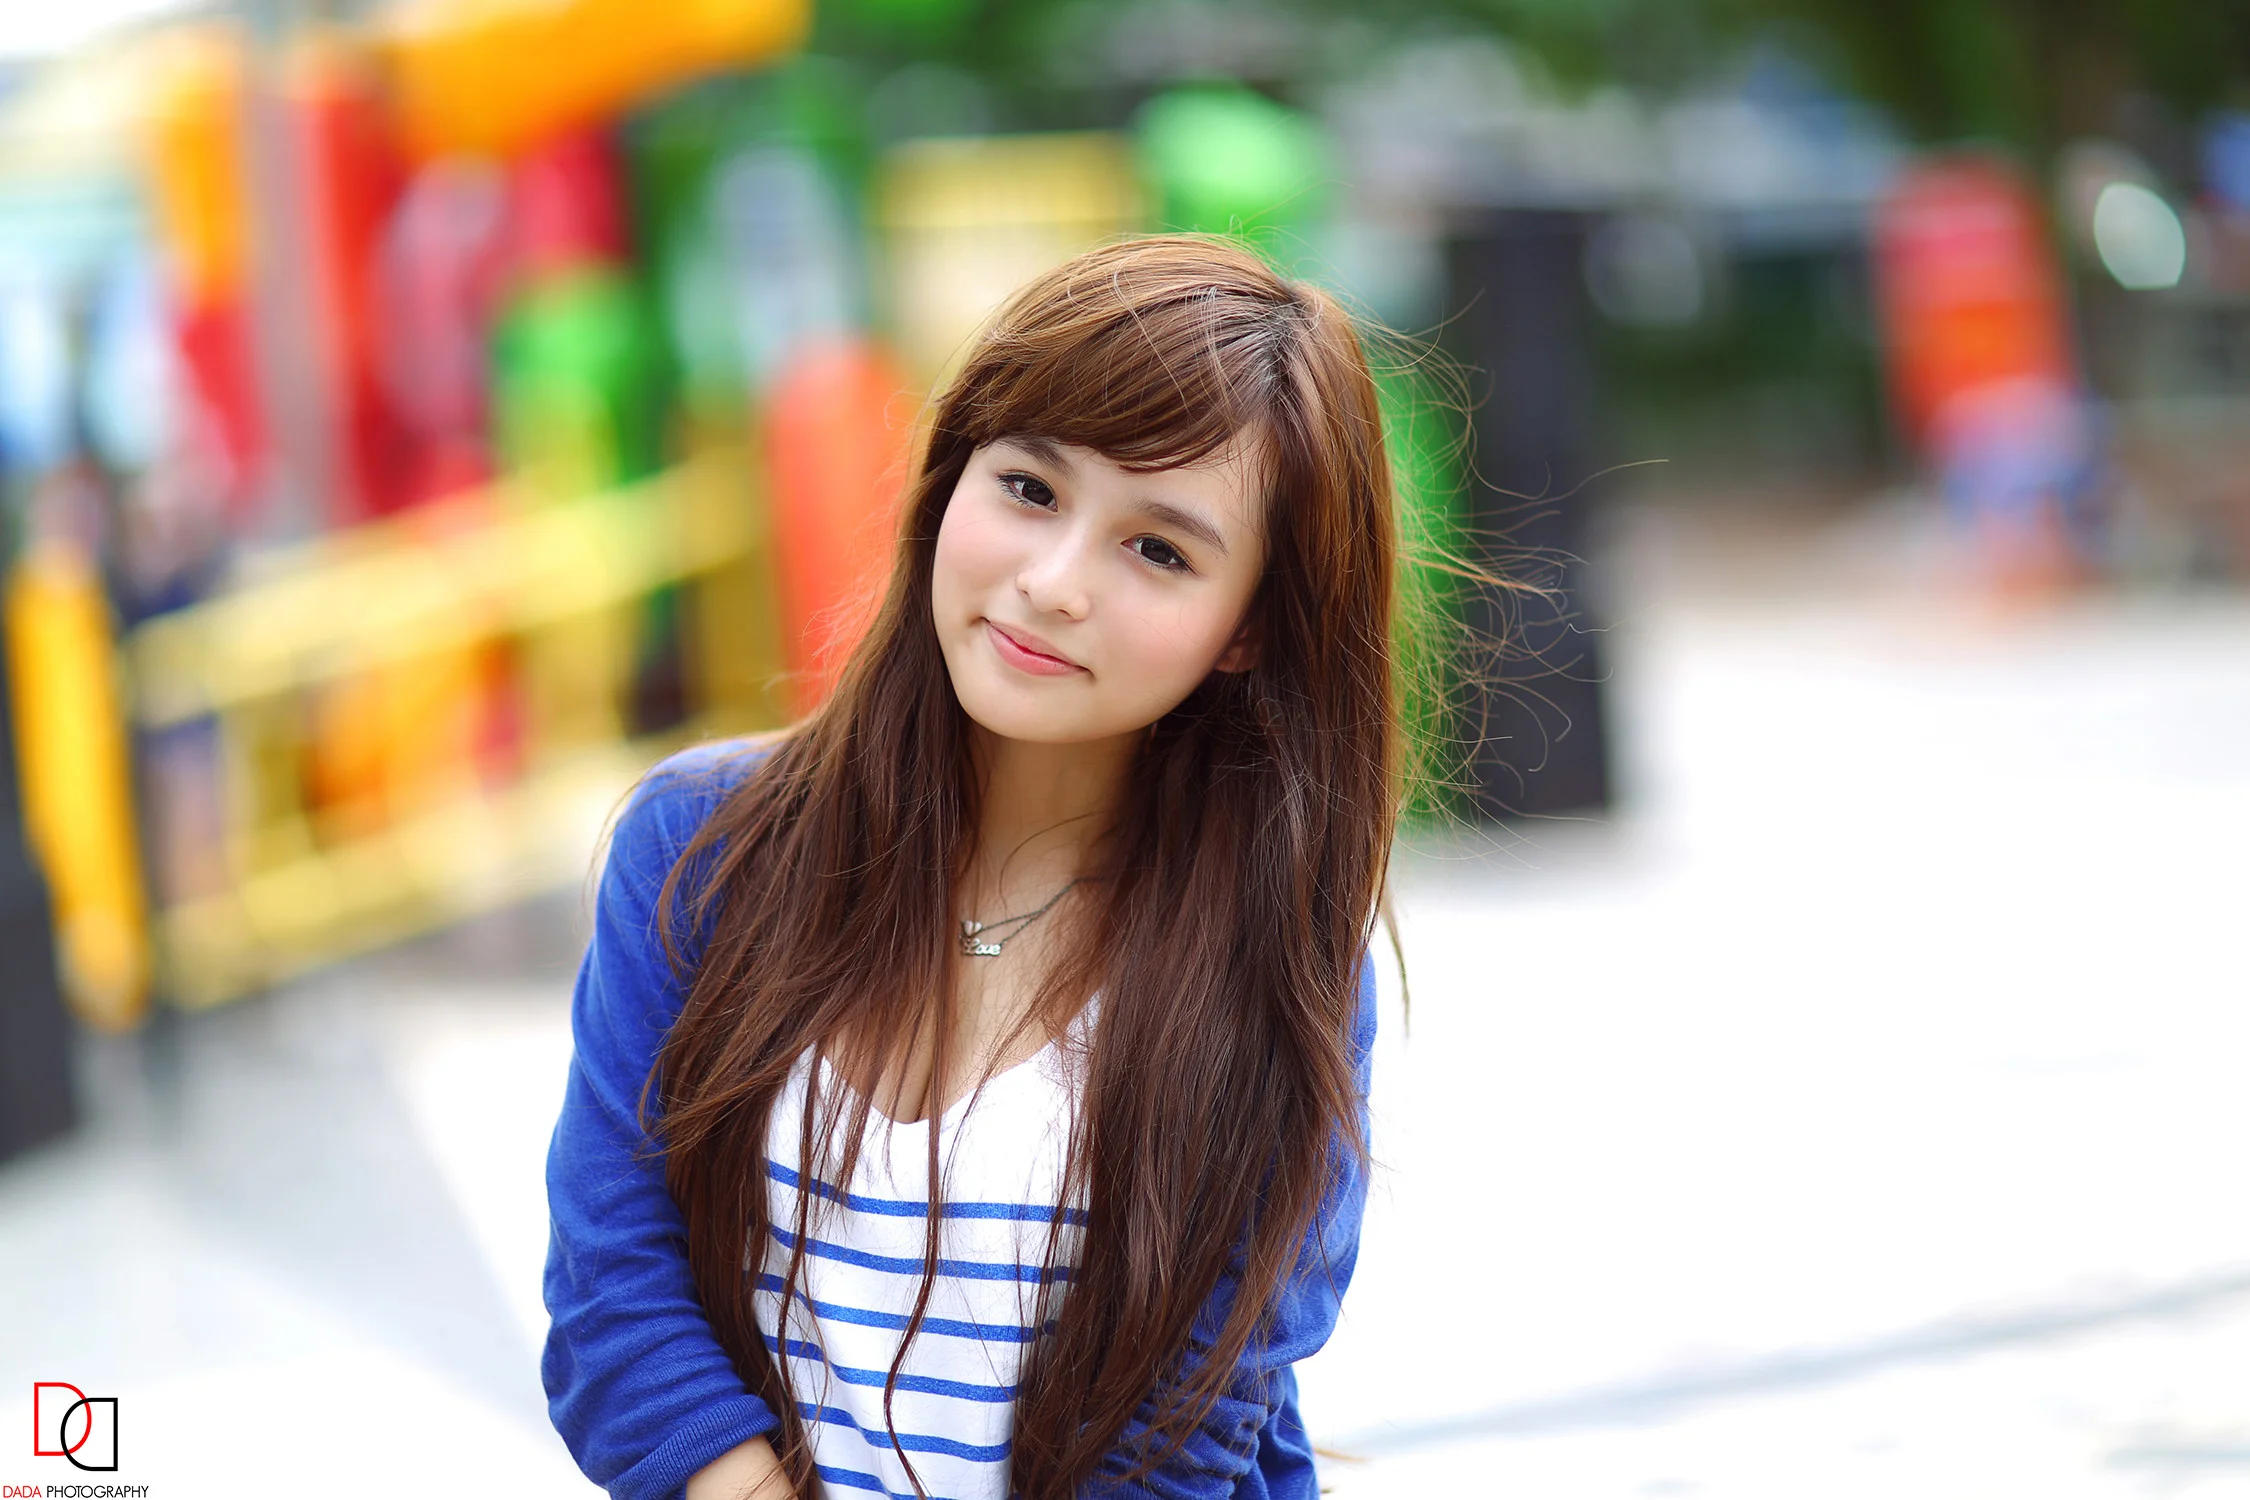 Hot Cute Asian Girl Wallpapers Full HD Free Download 2250Ã1500